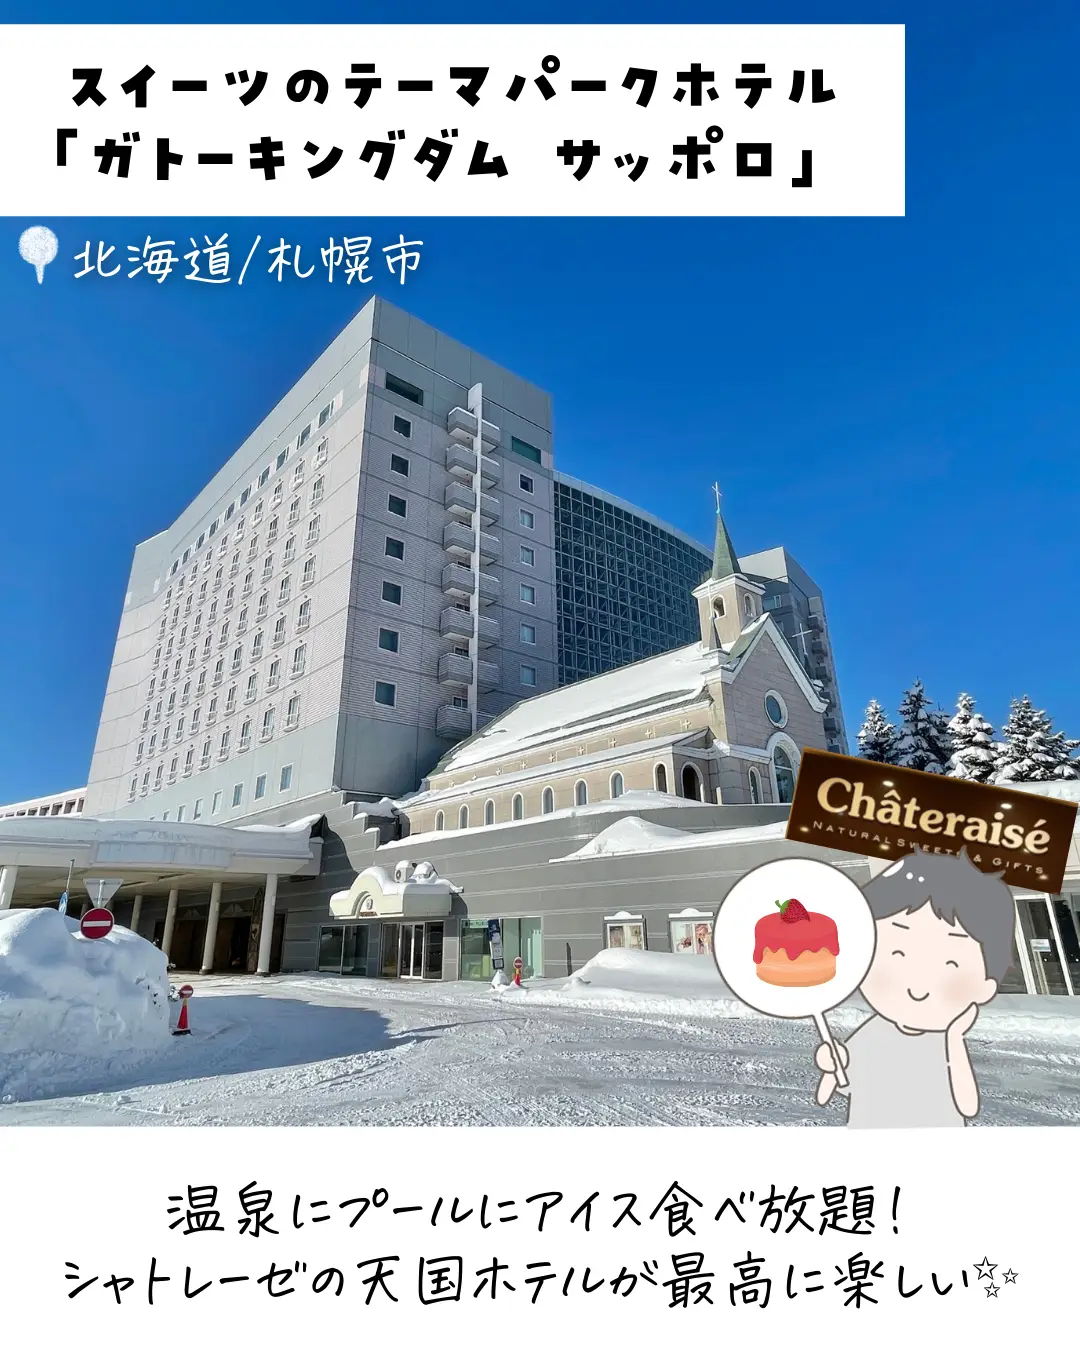 シャトレーゼ 北海道 ホテル ガトーキングダムサッポロ 1泊2日ペア宿泊